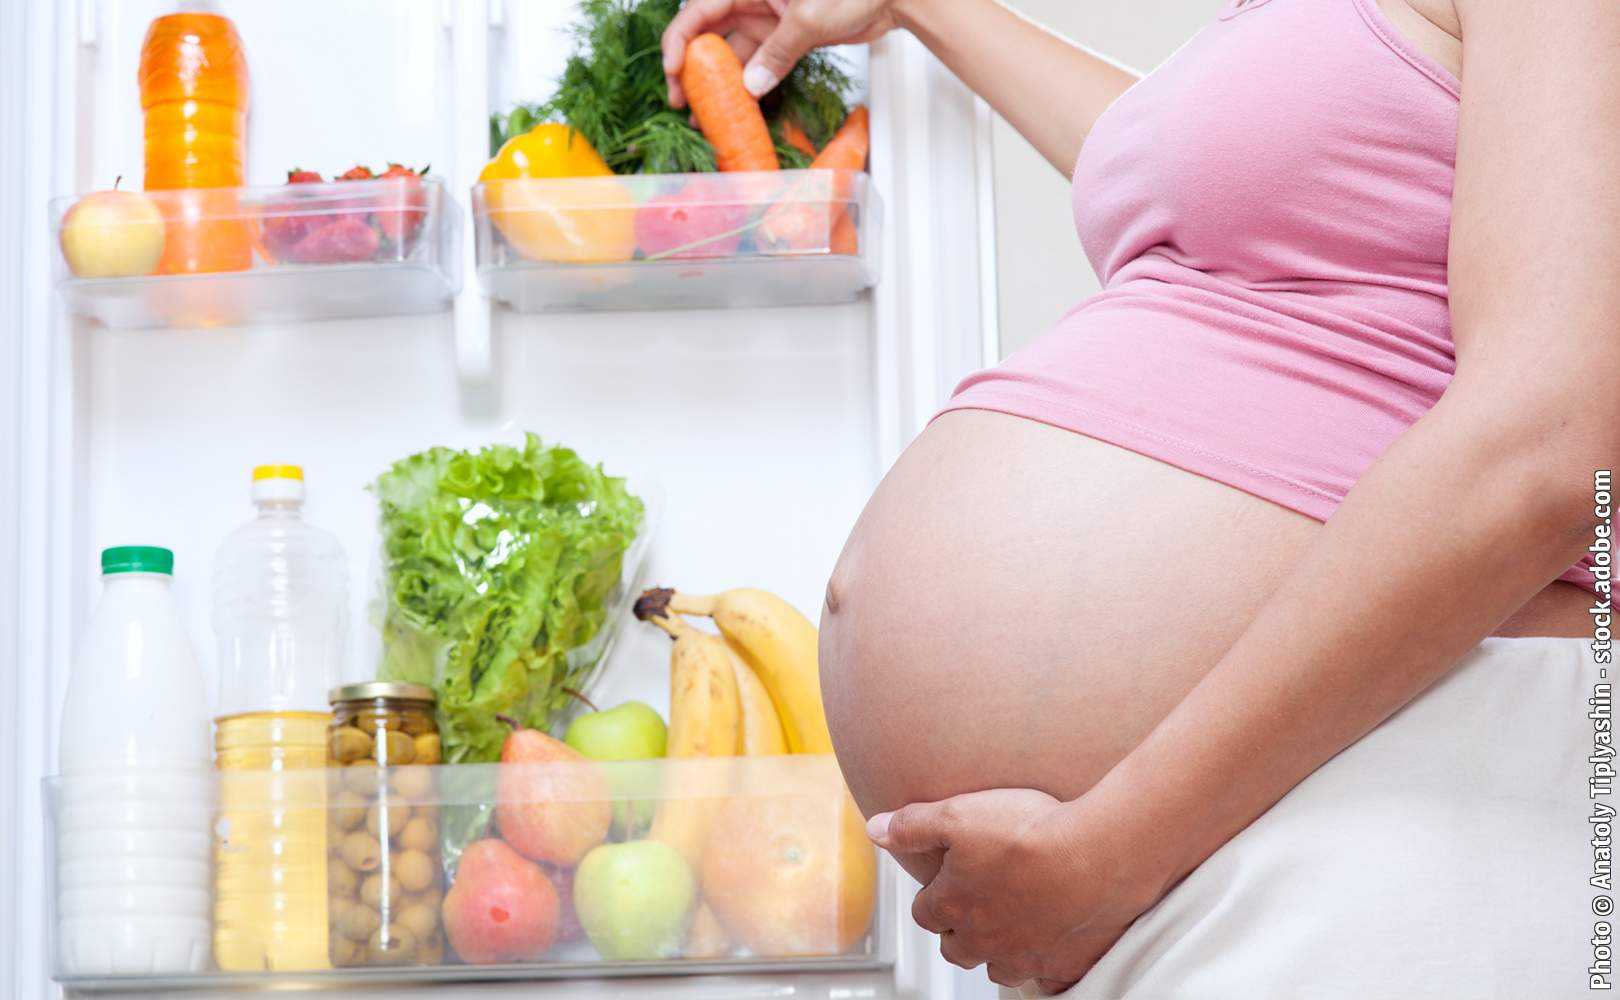 33 неделя беременности: признаки и ощущения женщины, симптомы, развитие плода